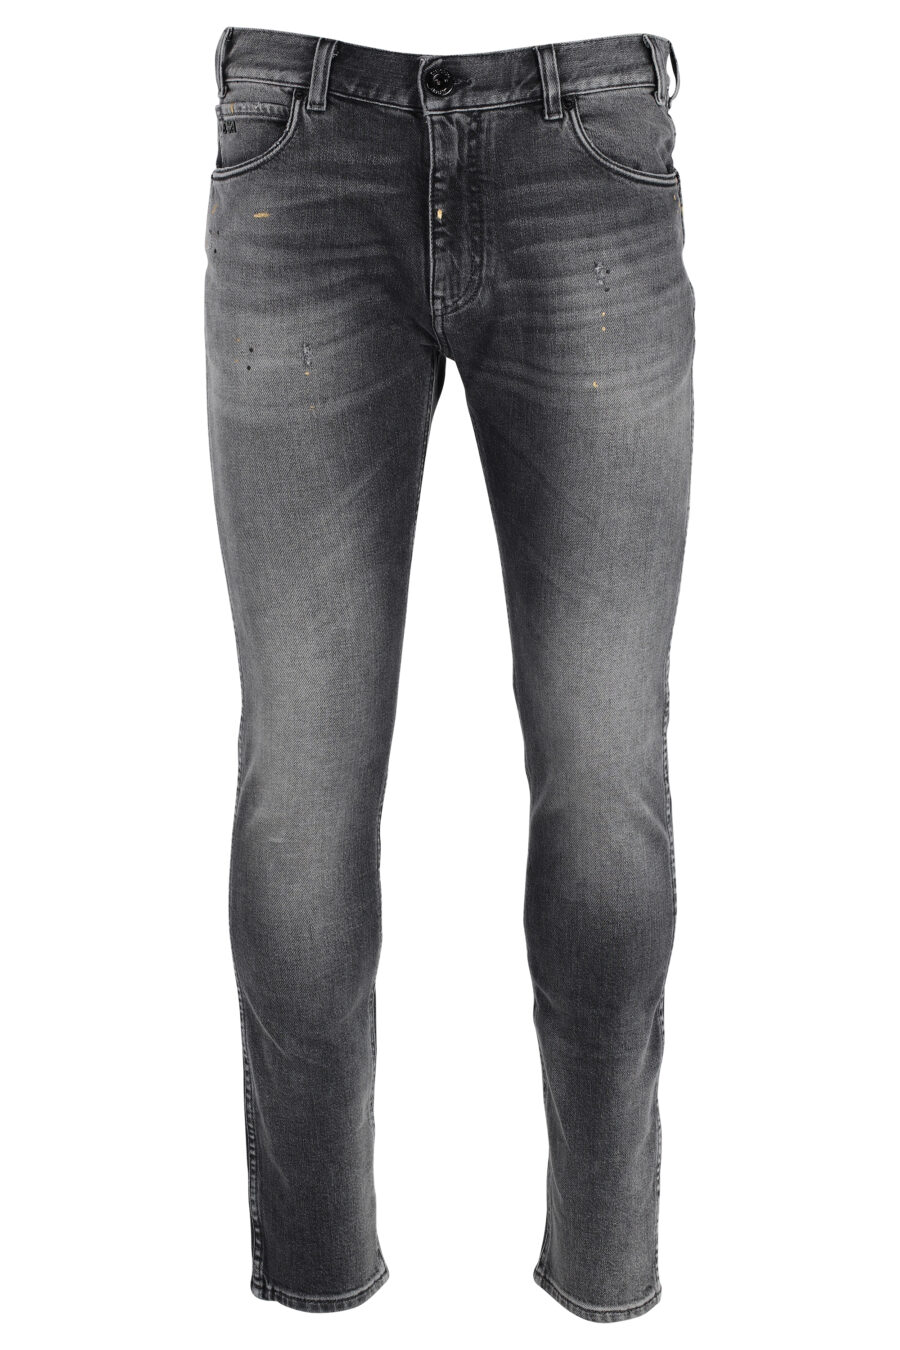 Ausgebleichte graue Jeans mit Adler-Logo - IMG 4823